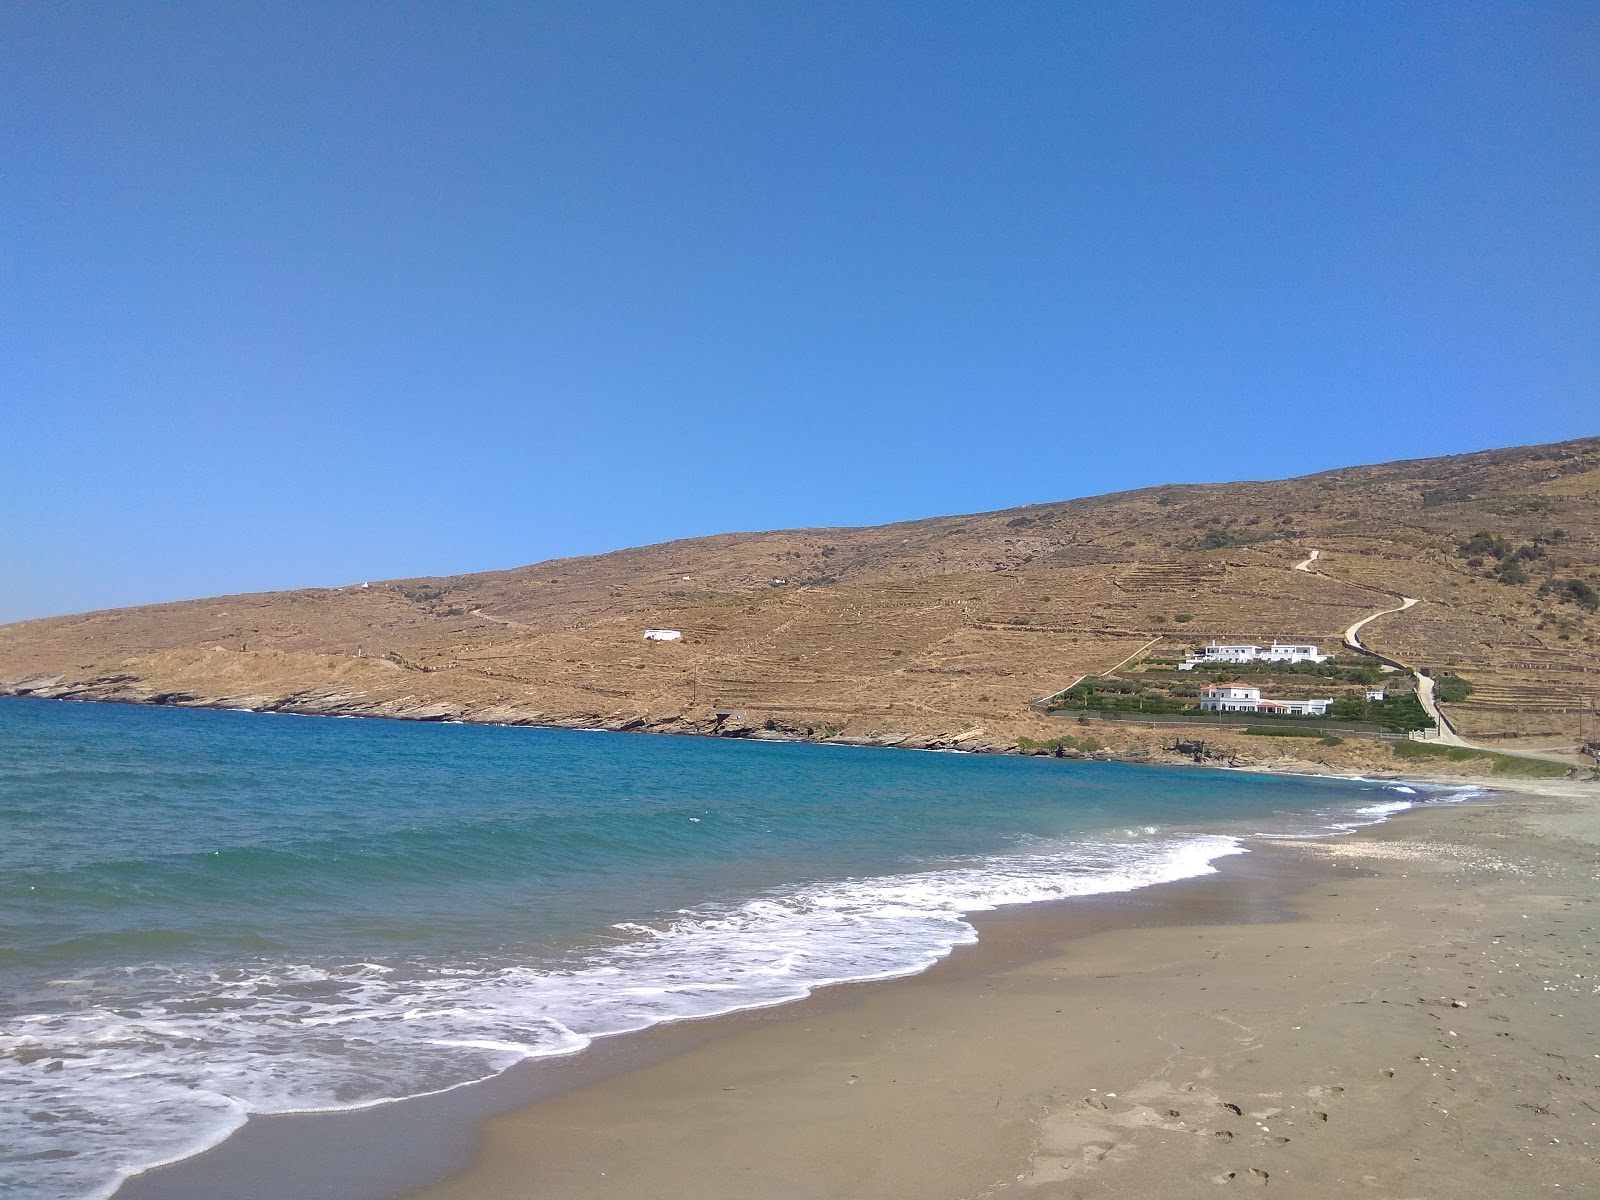 Paralia Milos'in fotoğrafı parlak kum yüzey ile